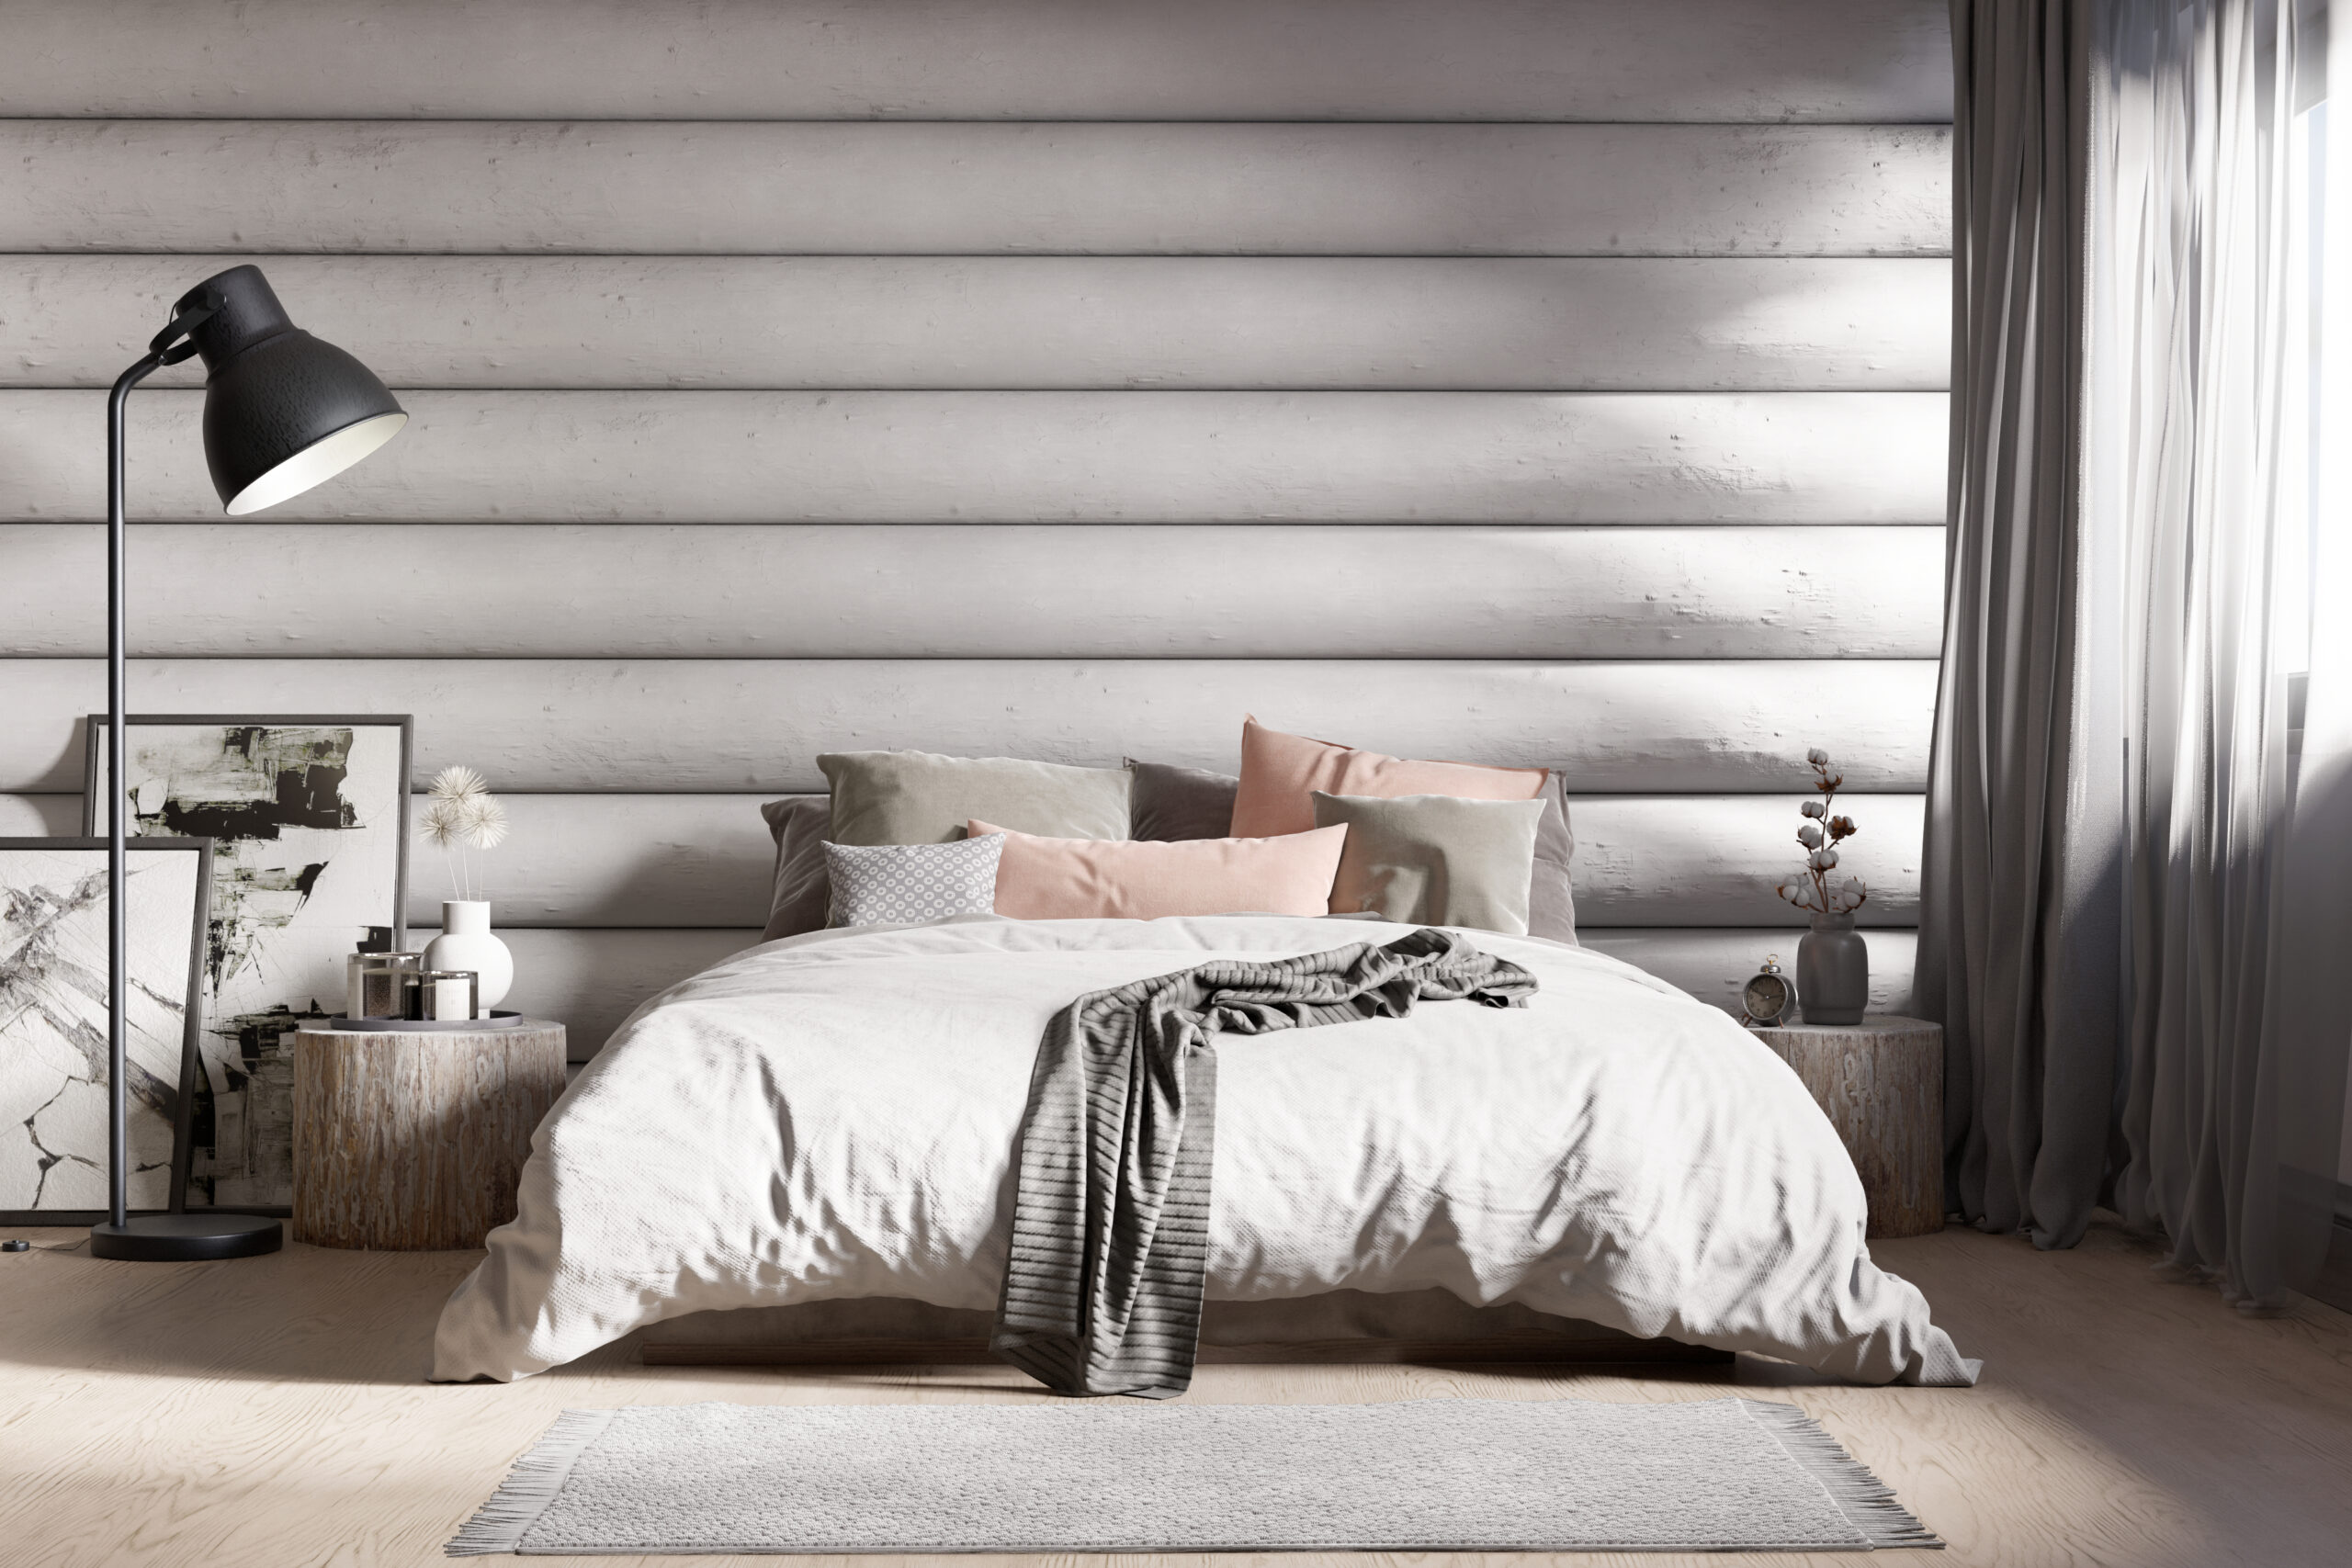 1.a-bedroom-3d-wizualization-made-in-blender-by-zatarski